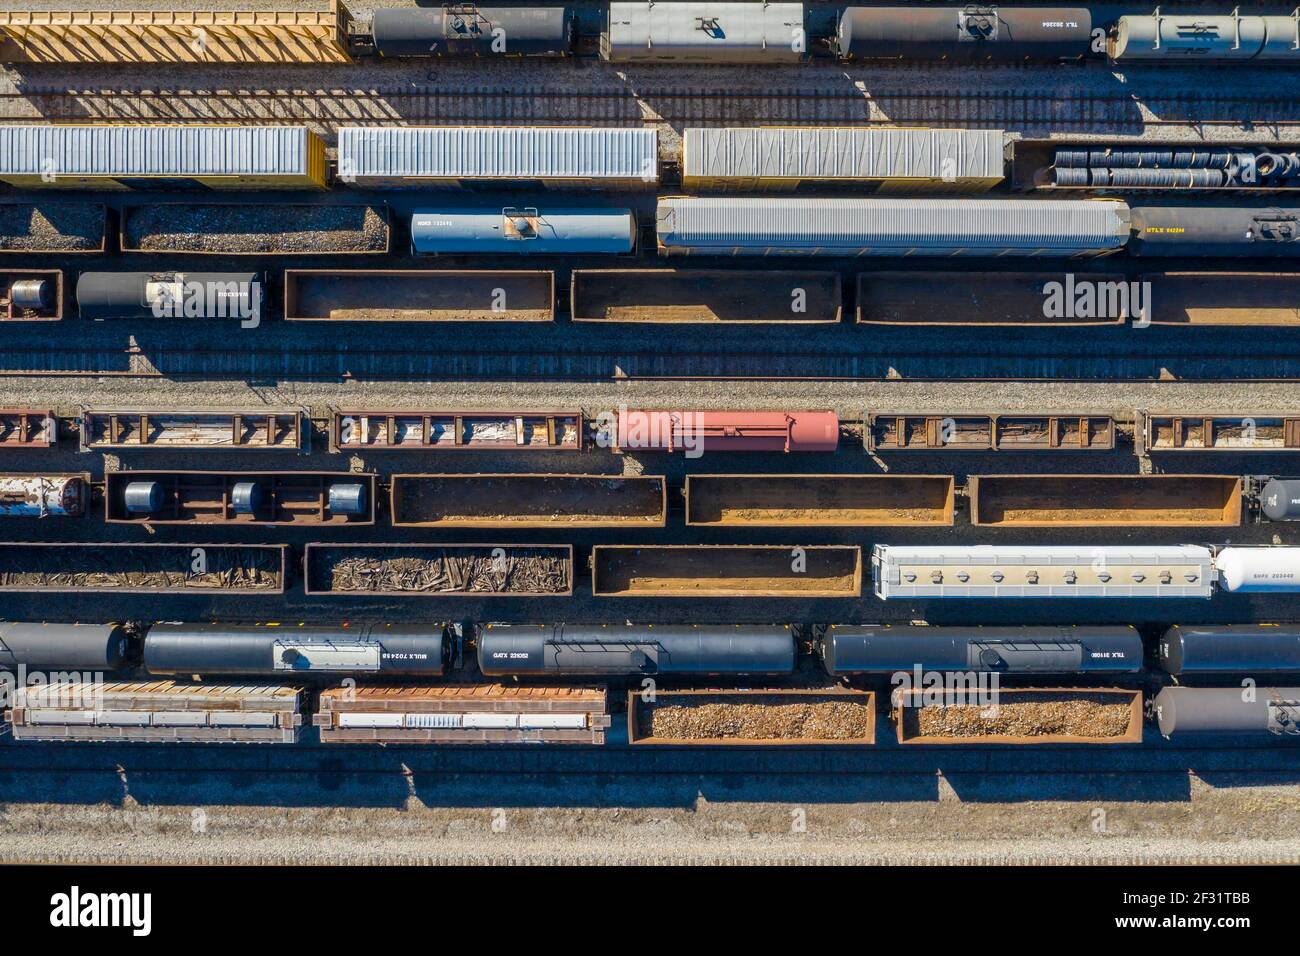 Detroit, Michigan - voitures de chemin de fer attendant à un chantier ferroviaire dans le sud-ouest de Detroit. Banque D'Images